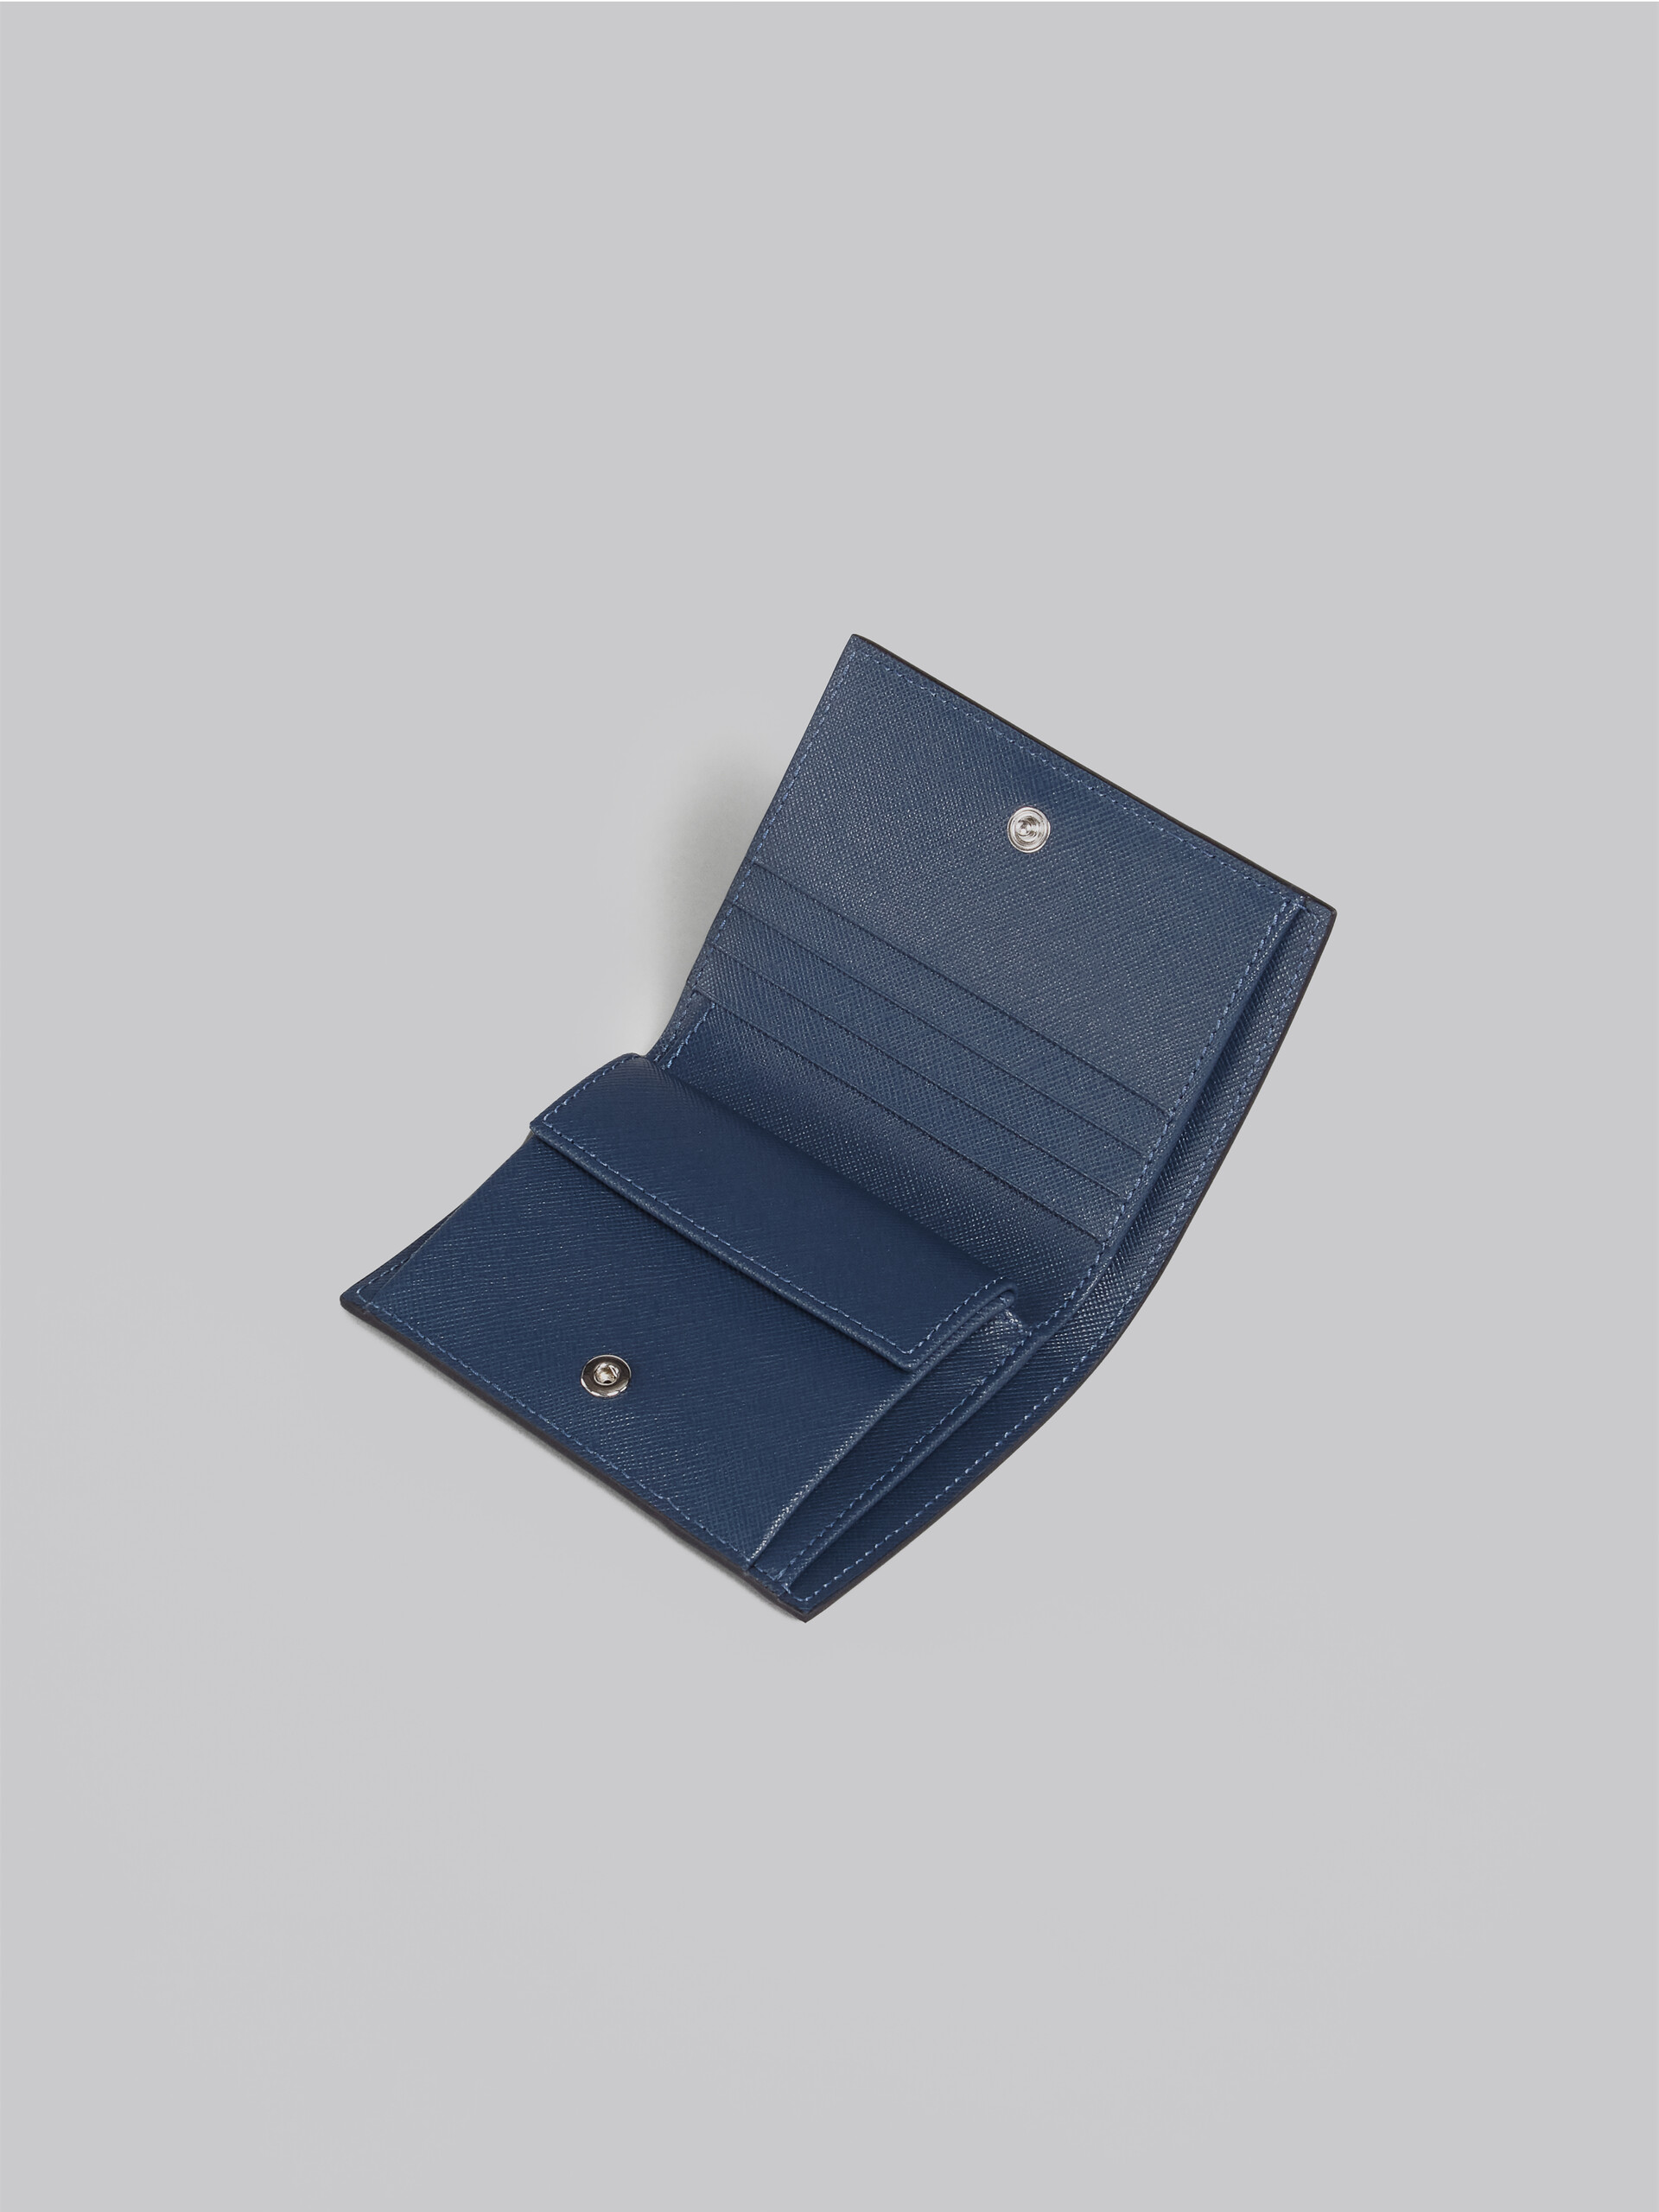 Black green blue leather bi-fold TRUNK wallet - Wallets - Image 4